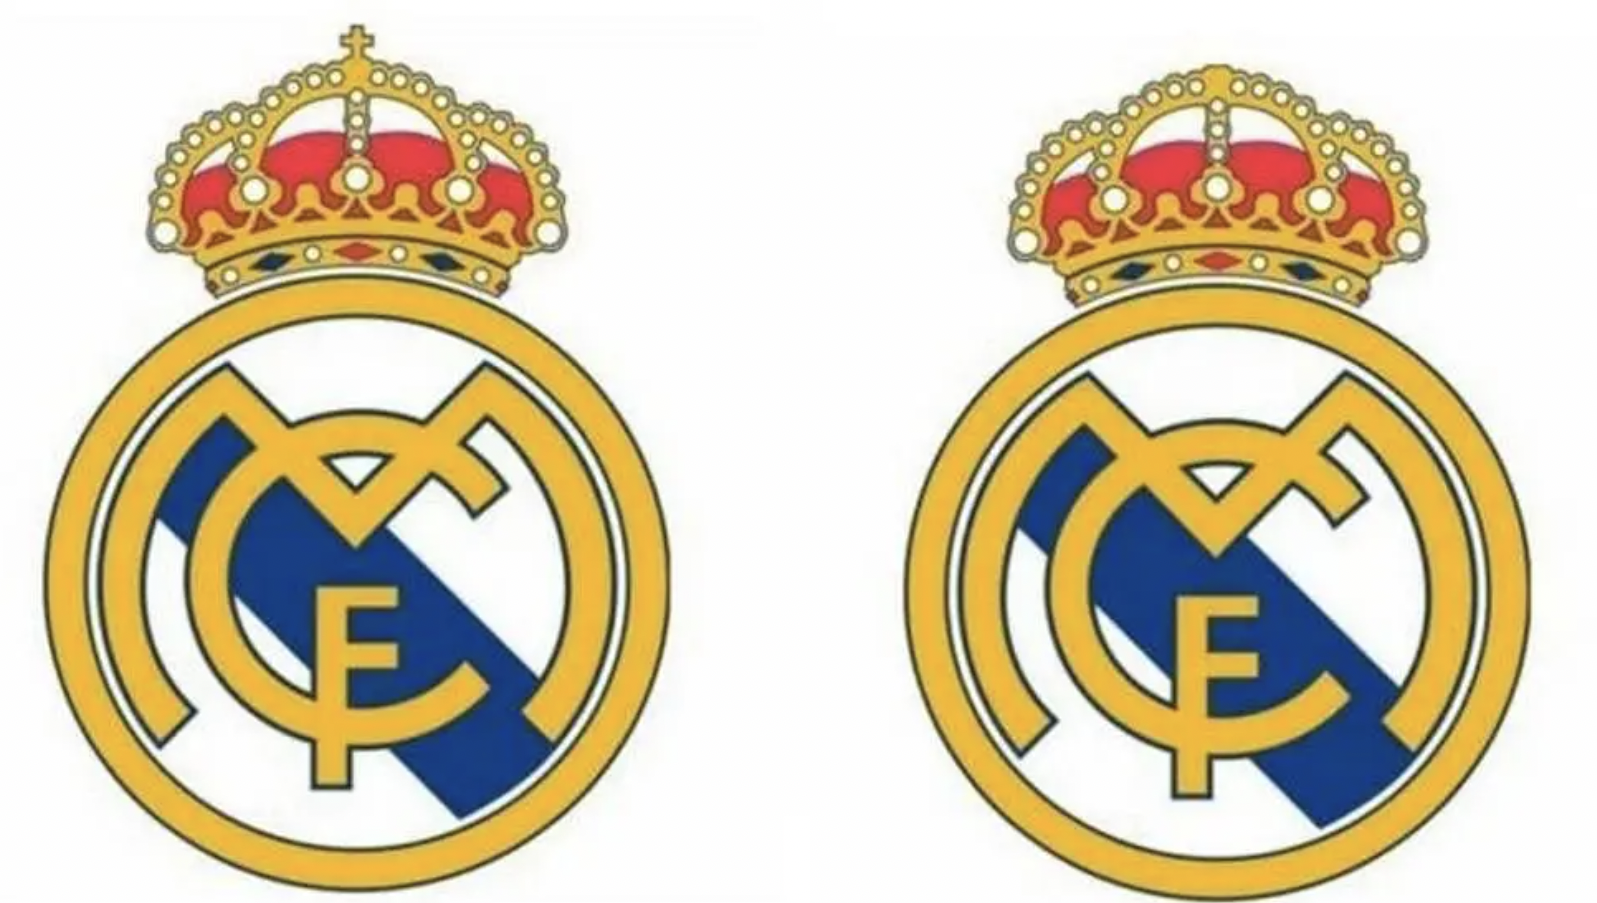 La historia detrás del escudo del Real Madrid 